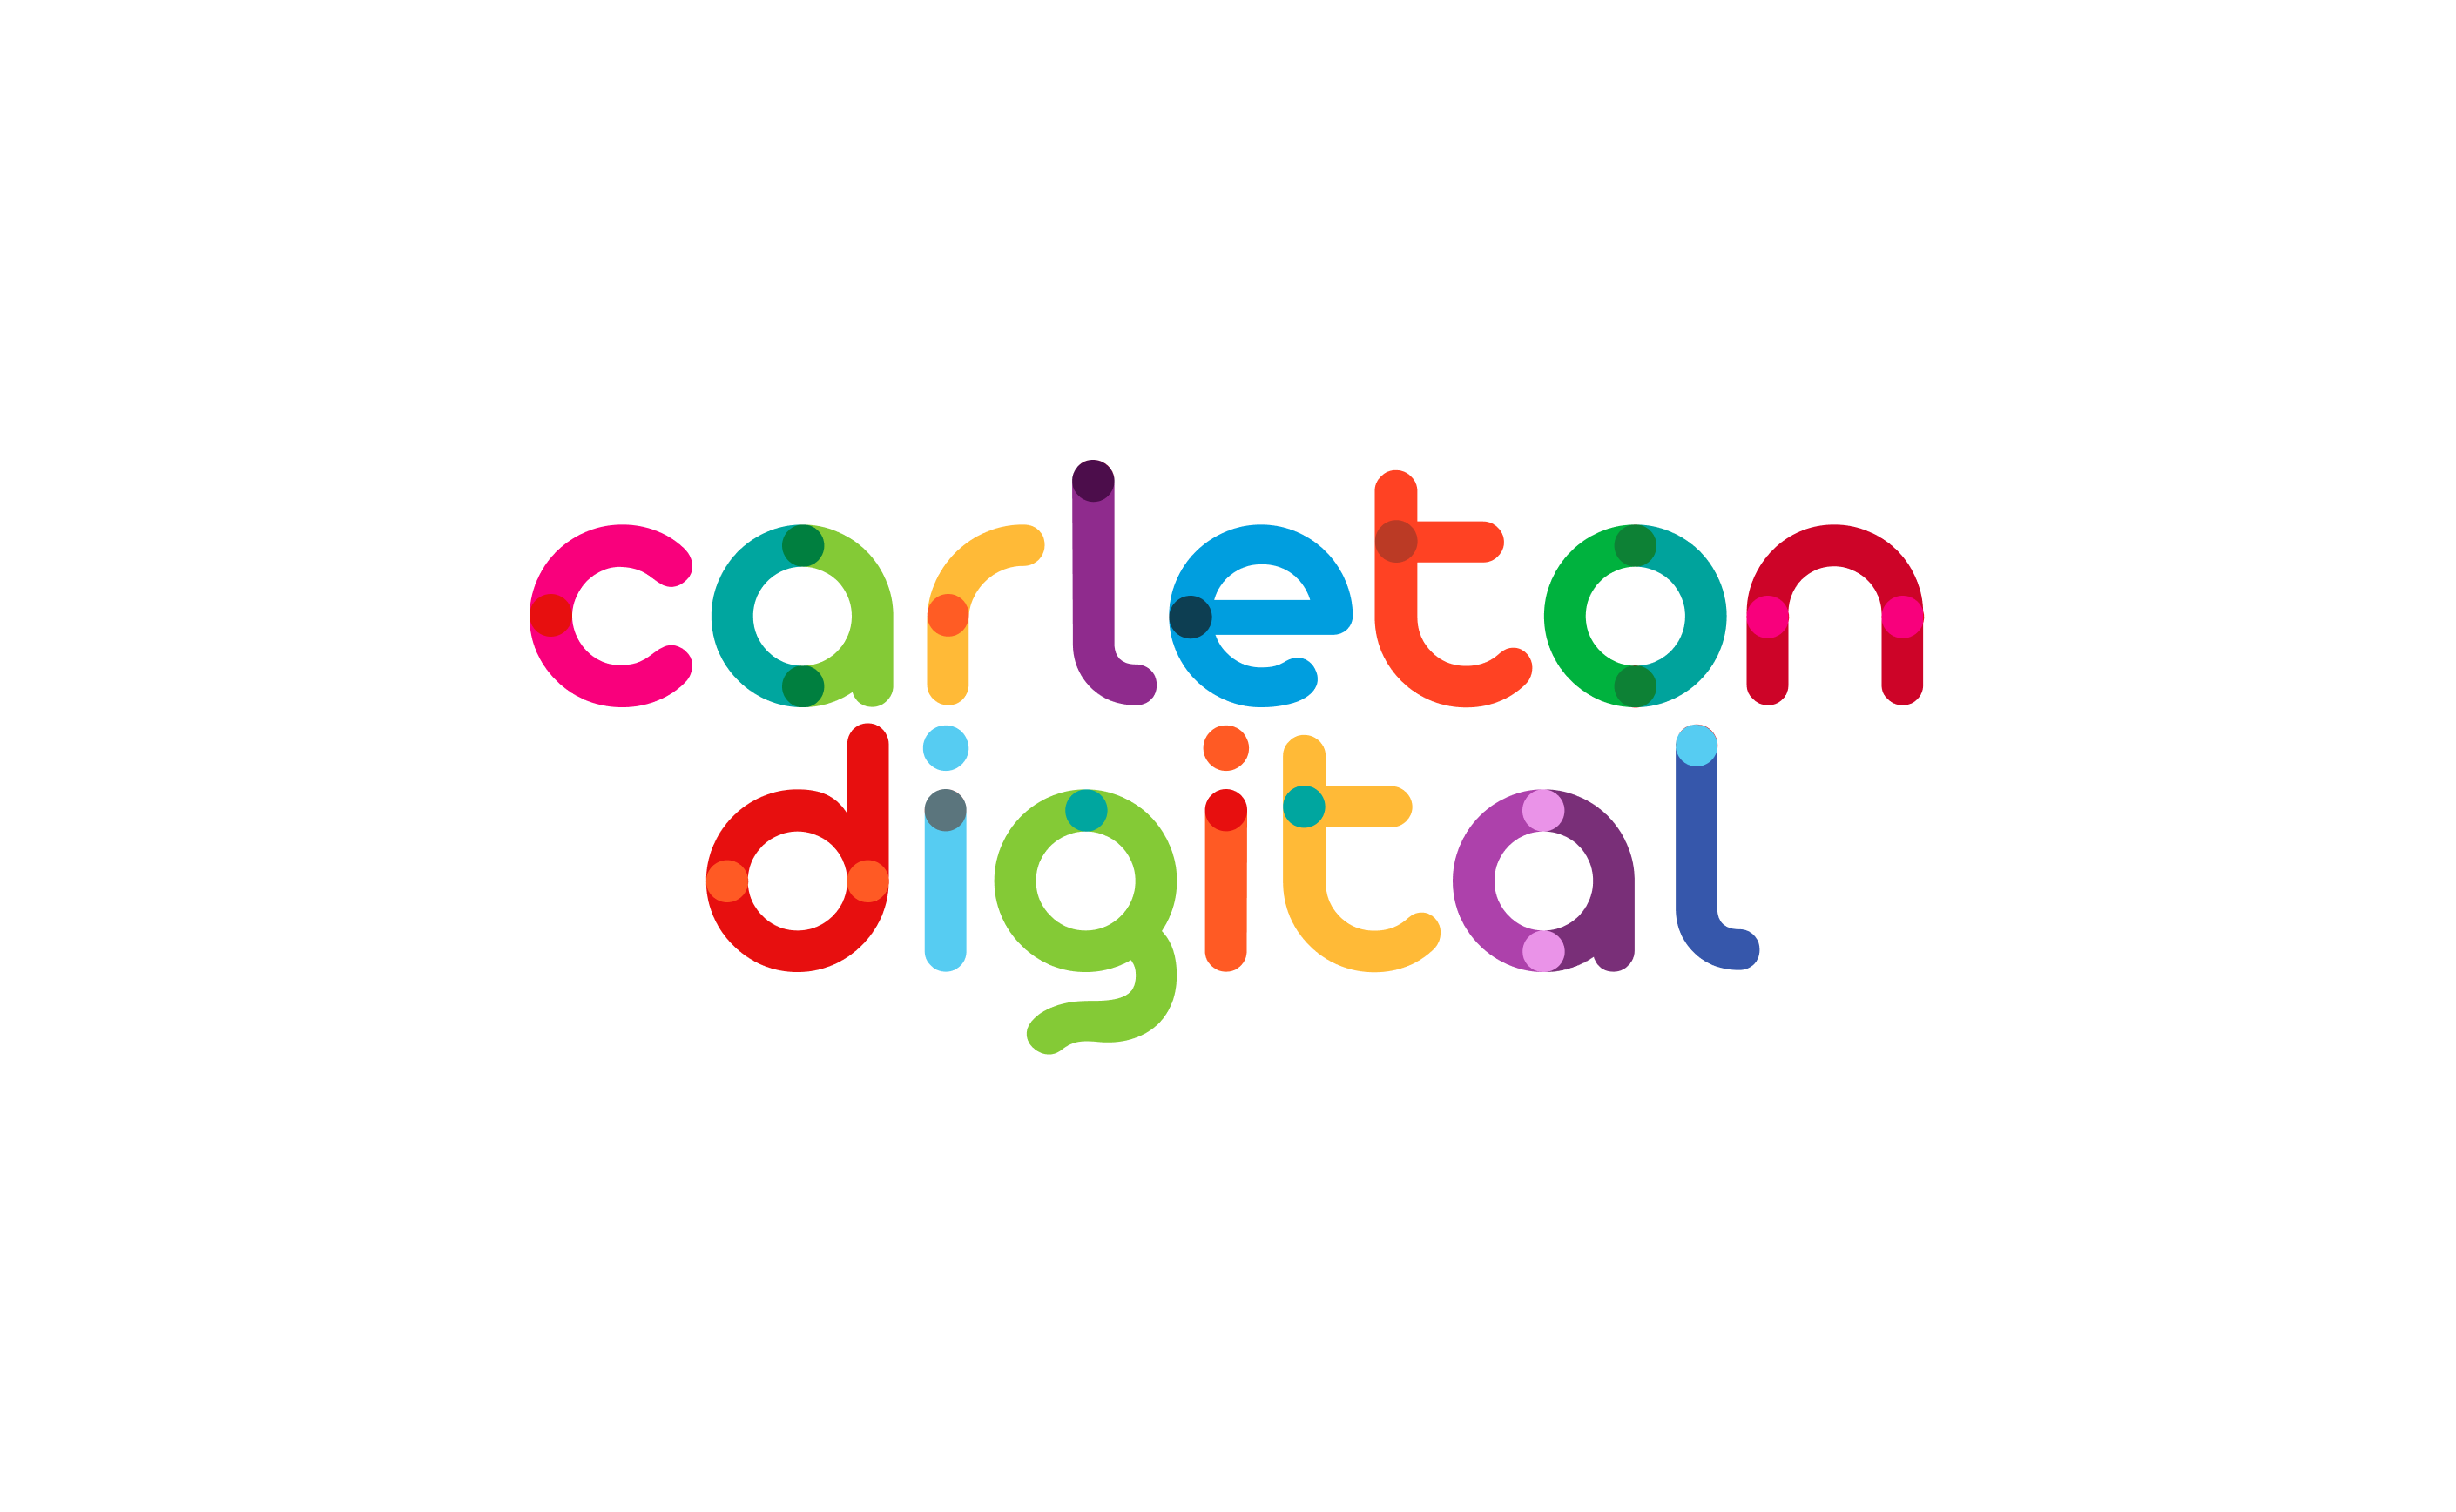 (c) Carleton.digital